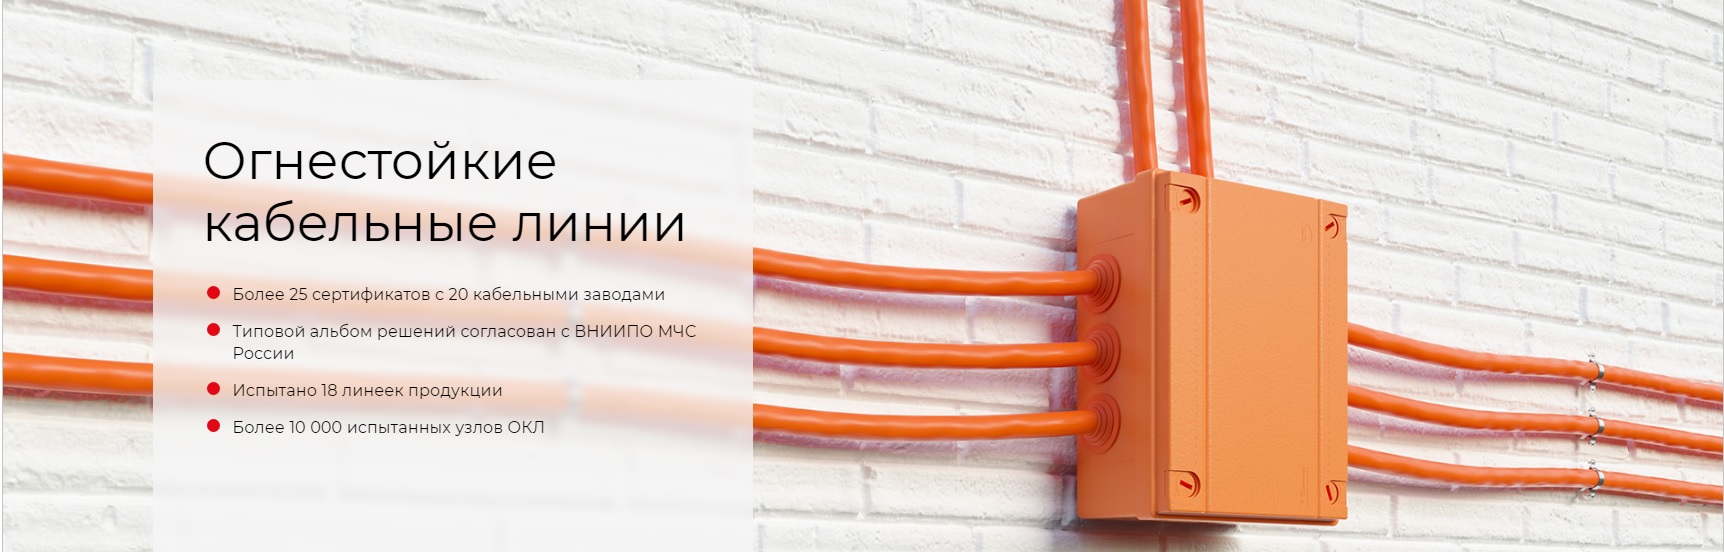 Фастпром - огнестойкие кабельные коробки